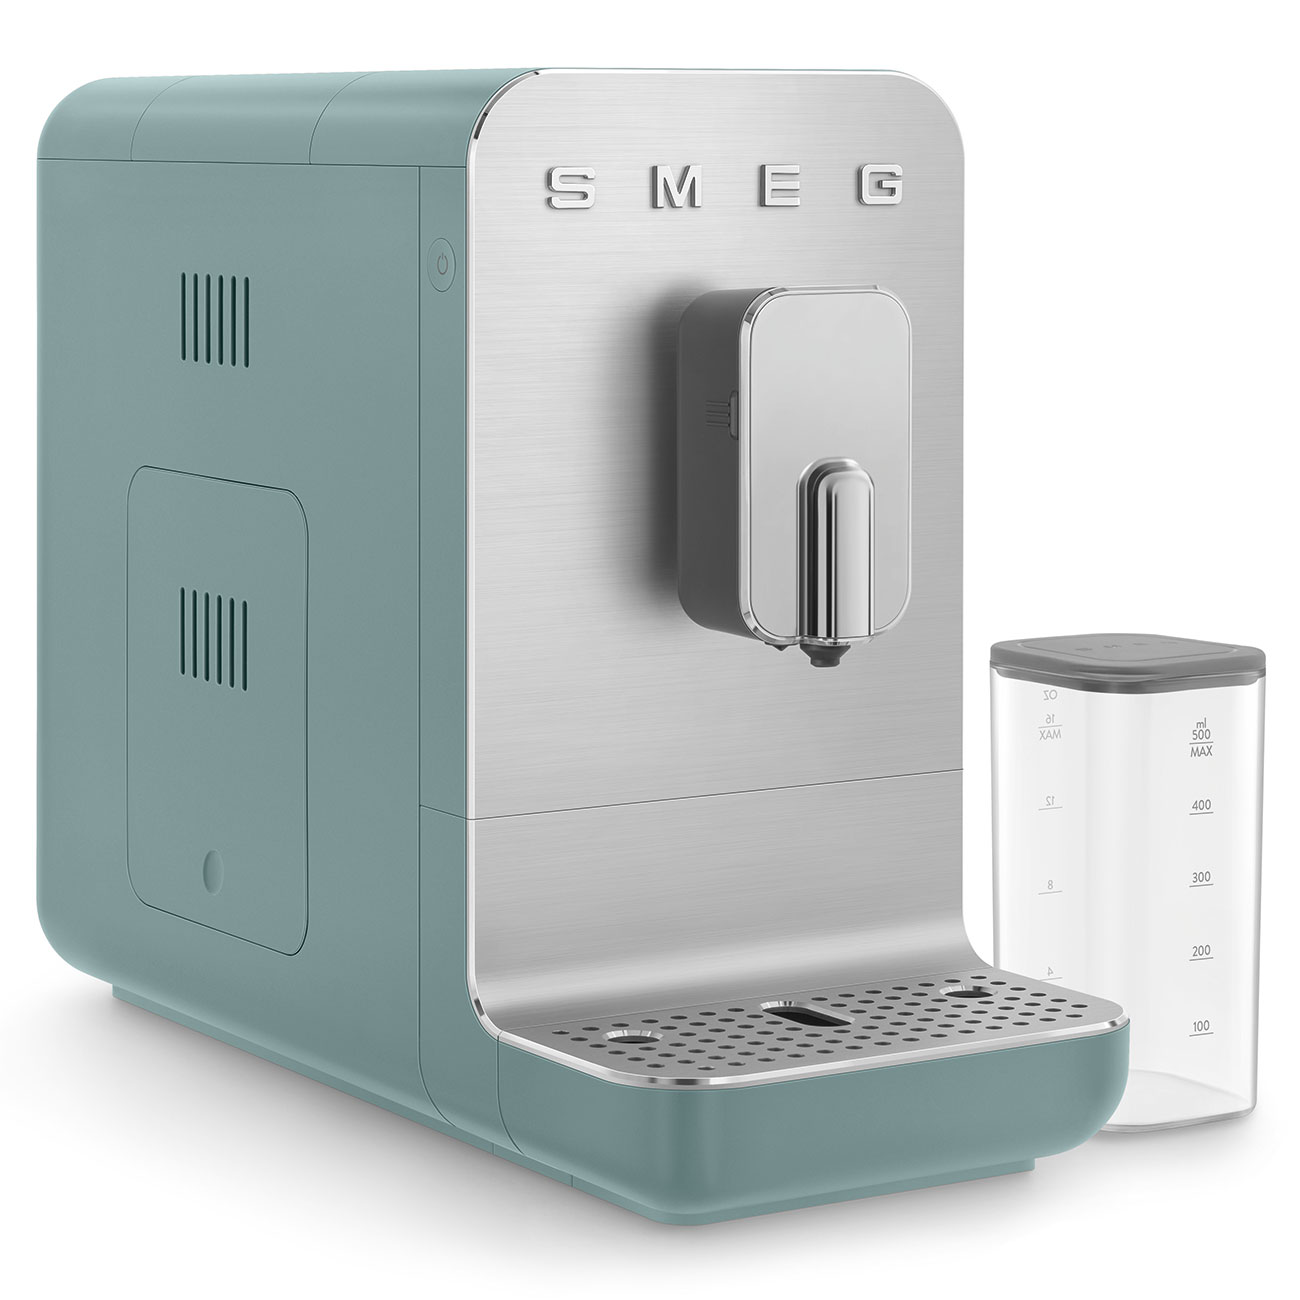 Smeg Emerald Green Espresso automatisch koffiezetapparaat met geïntegreerd melksysteem_3